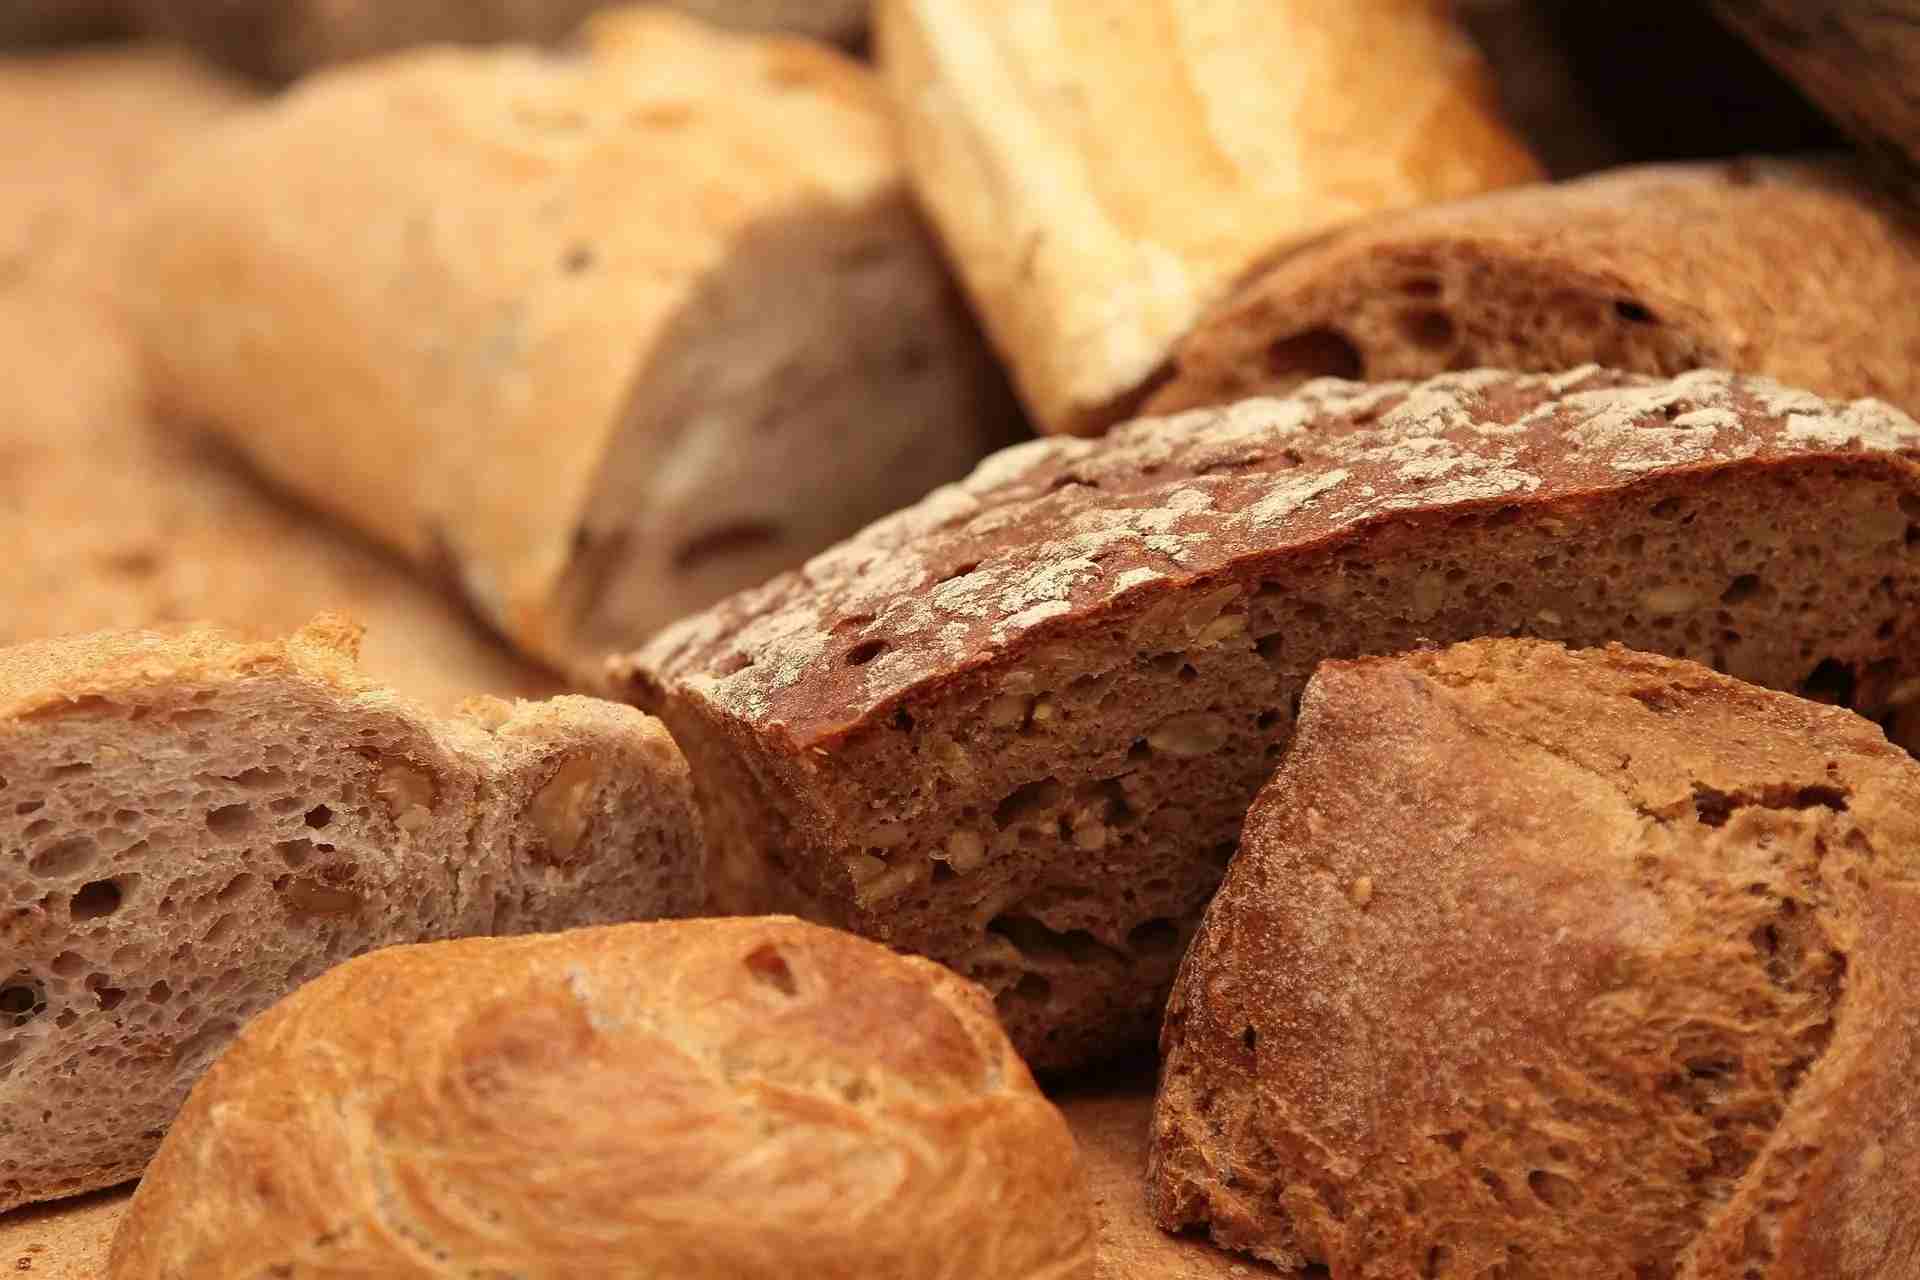 Earlier Sumerians baked leavened bread